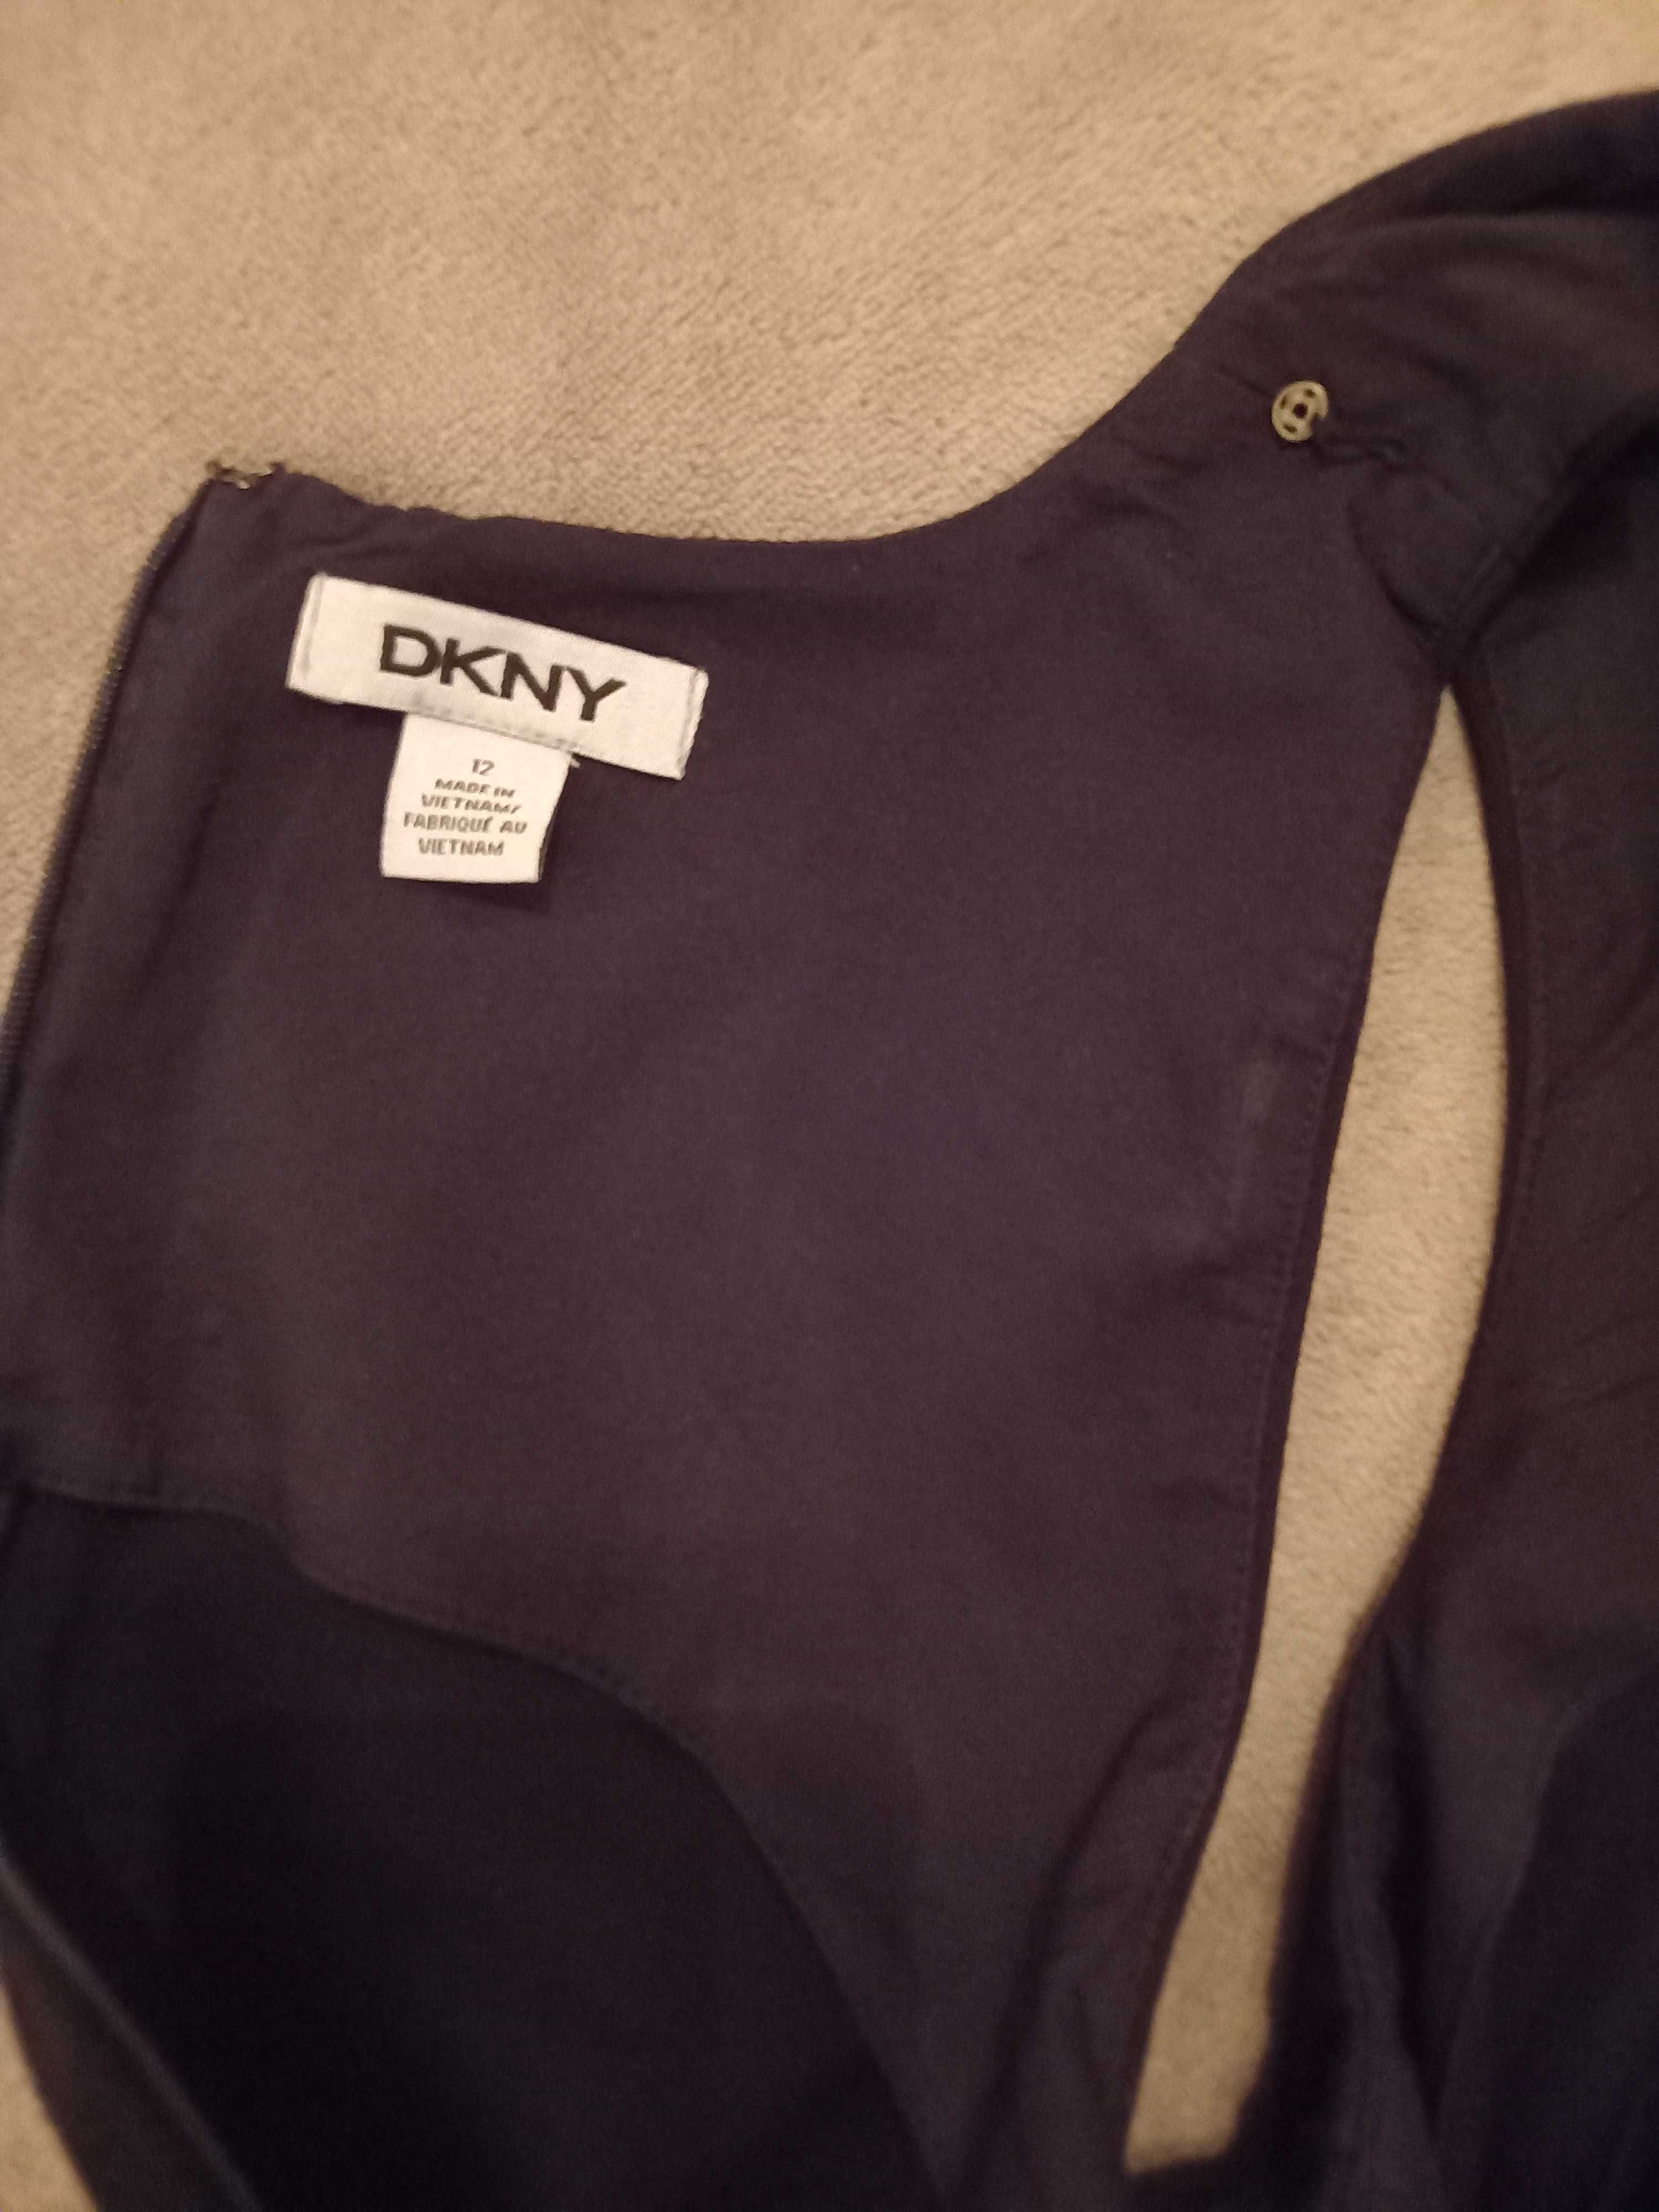 Rochie originala DKNY, neagră, mărimea 12